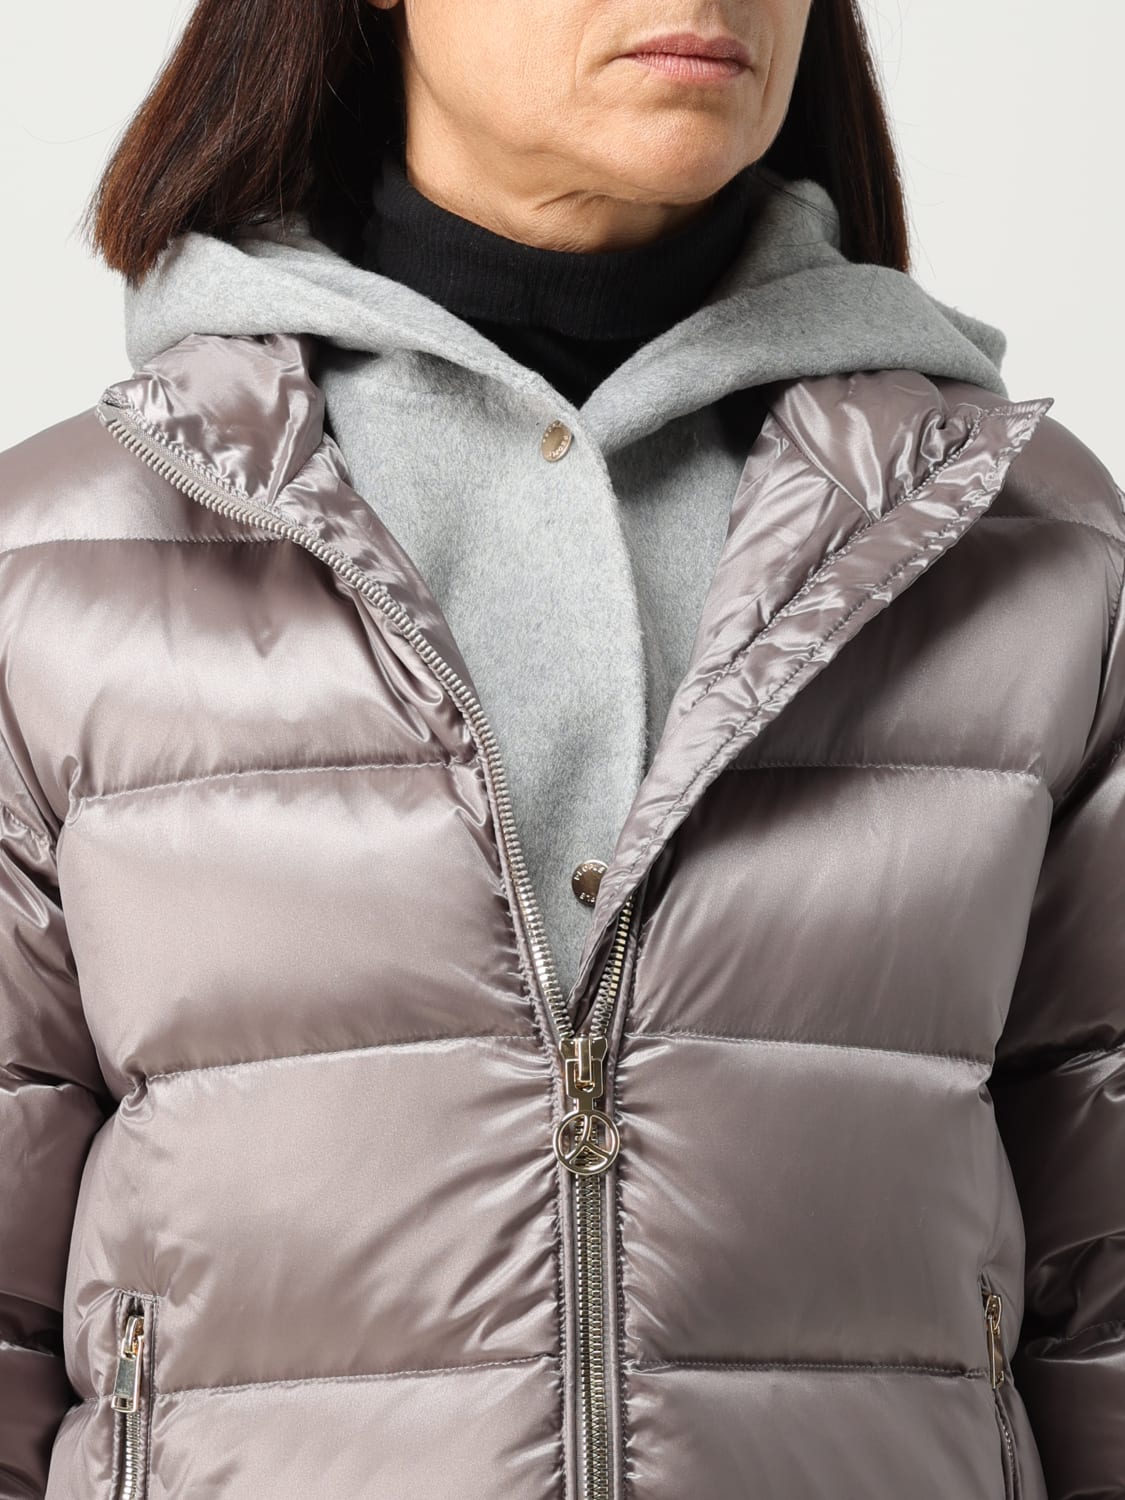 SHIBUYA: Shibuya Of OF jacket | online jacket PEOPLE woman USAGIPM839 People - Grey for at